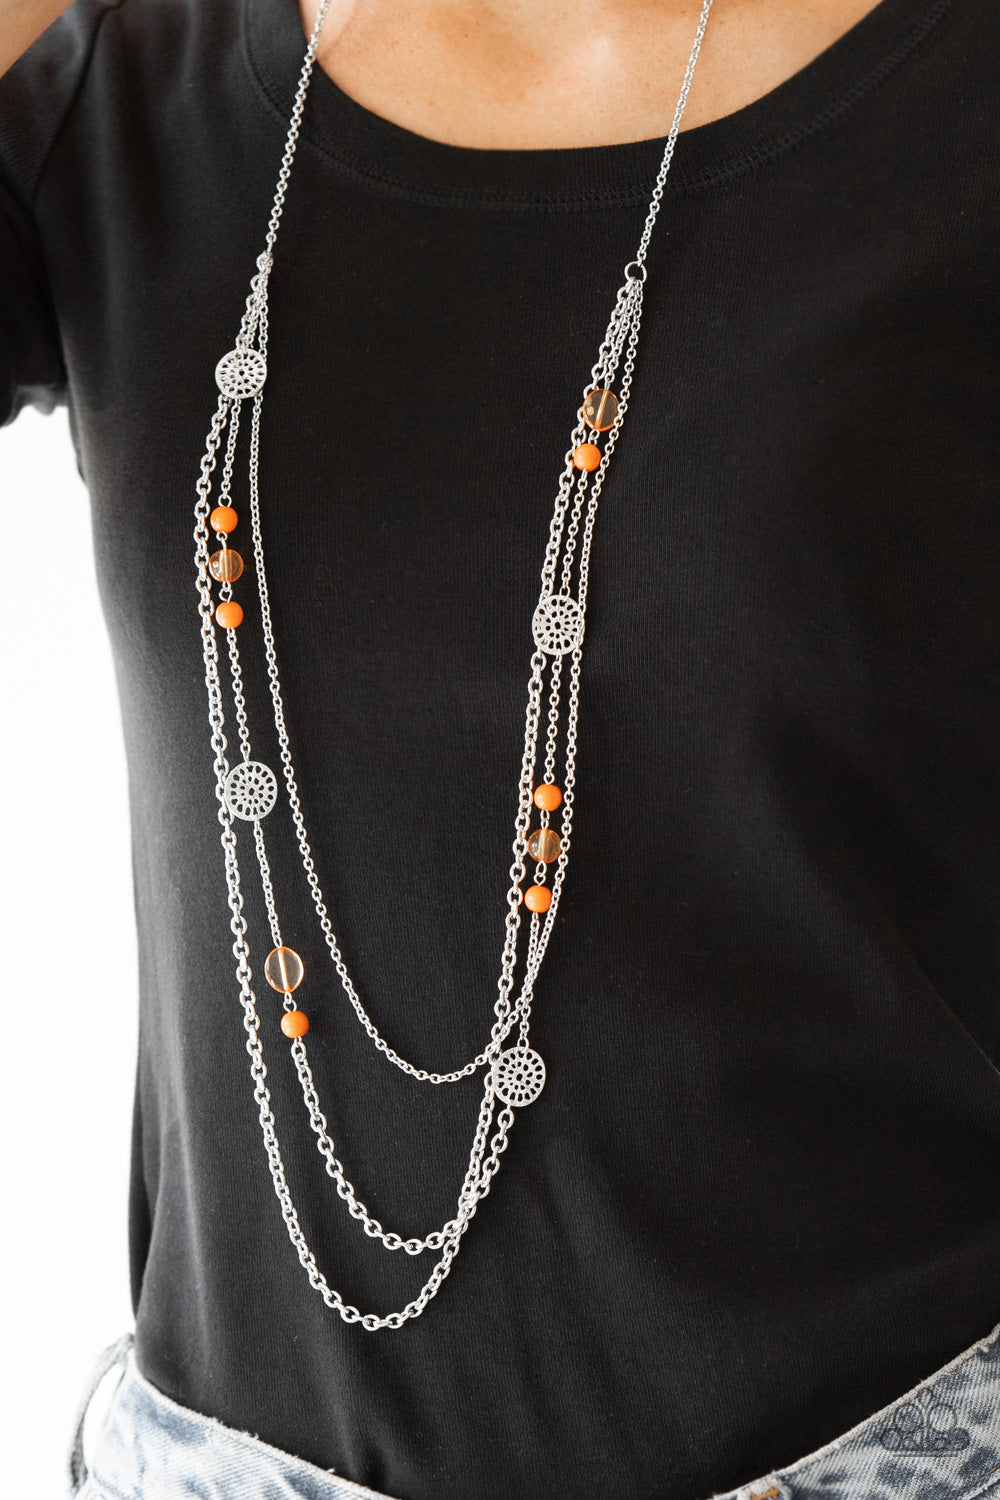 – Pretty - - Fashion Boutique Accessories Bedazzle Necklace Mobile Pretty Me Orange Paparazzi Pop-tastic!